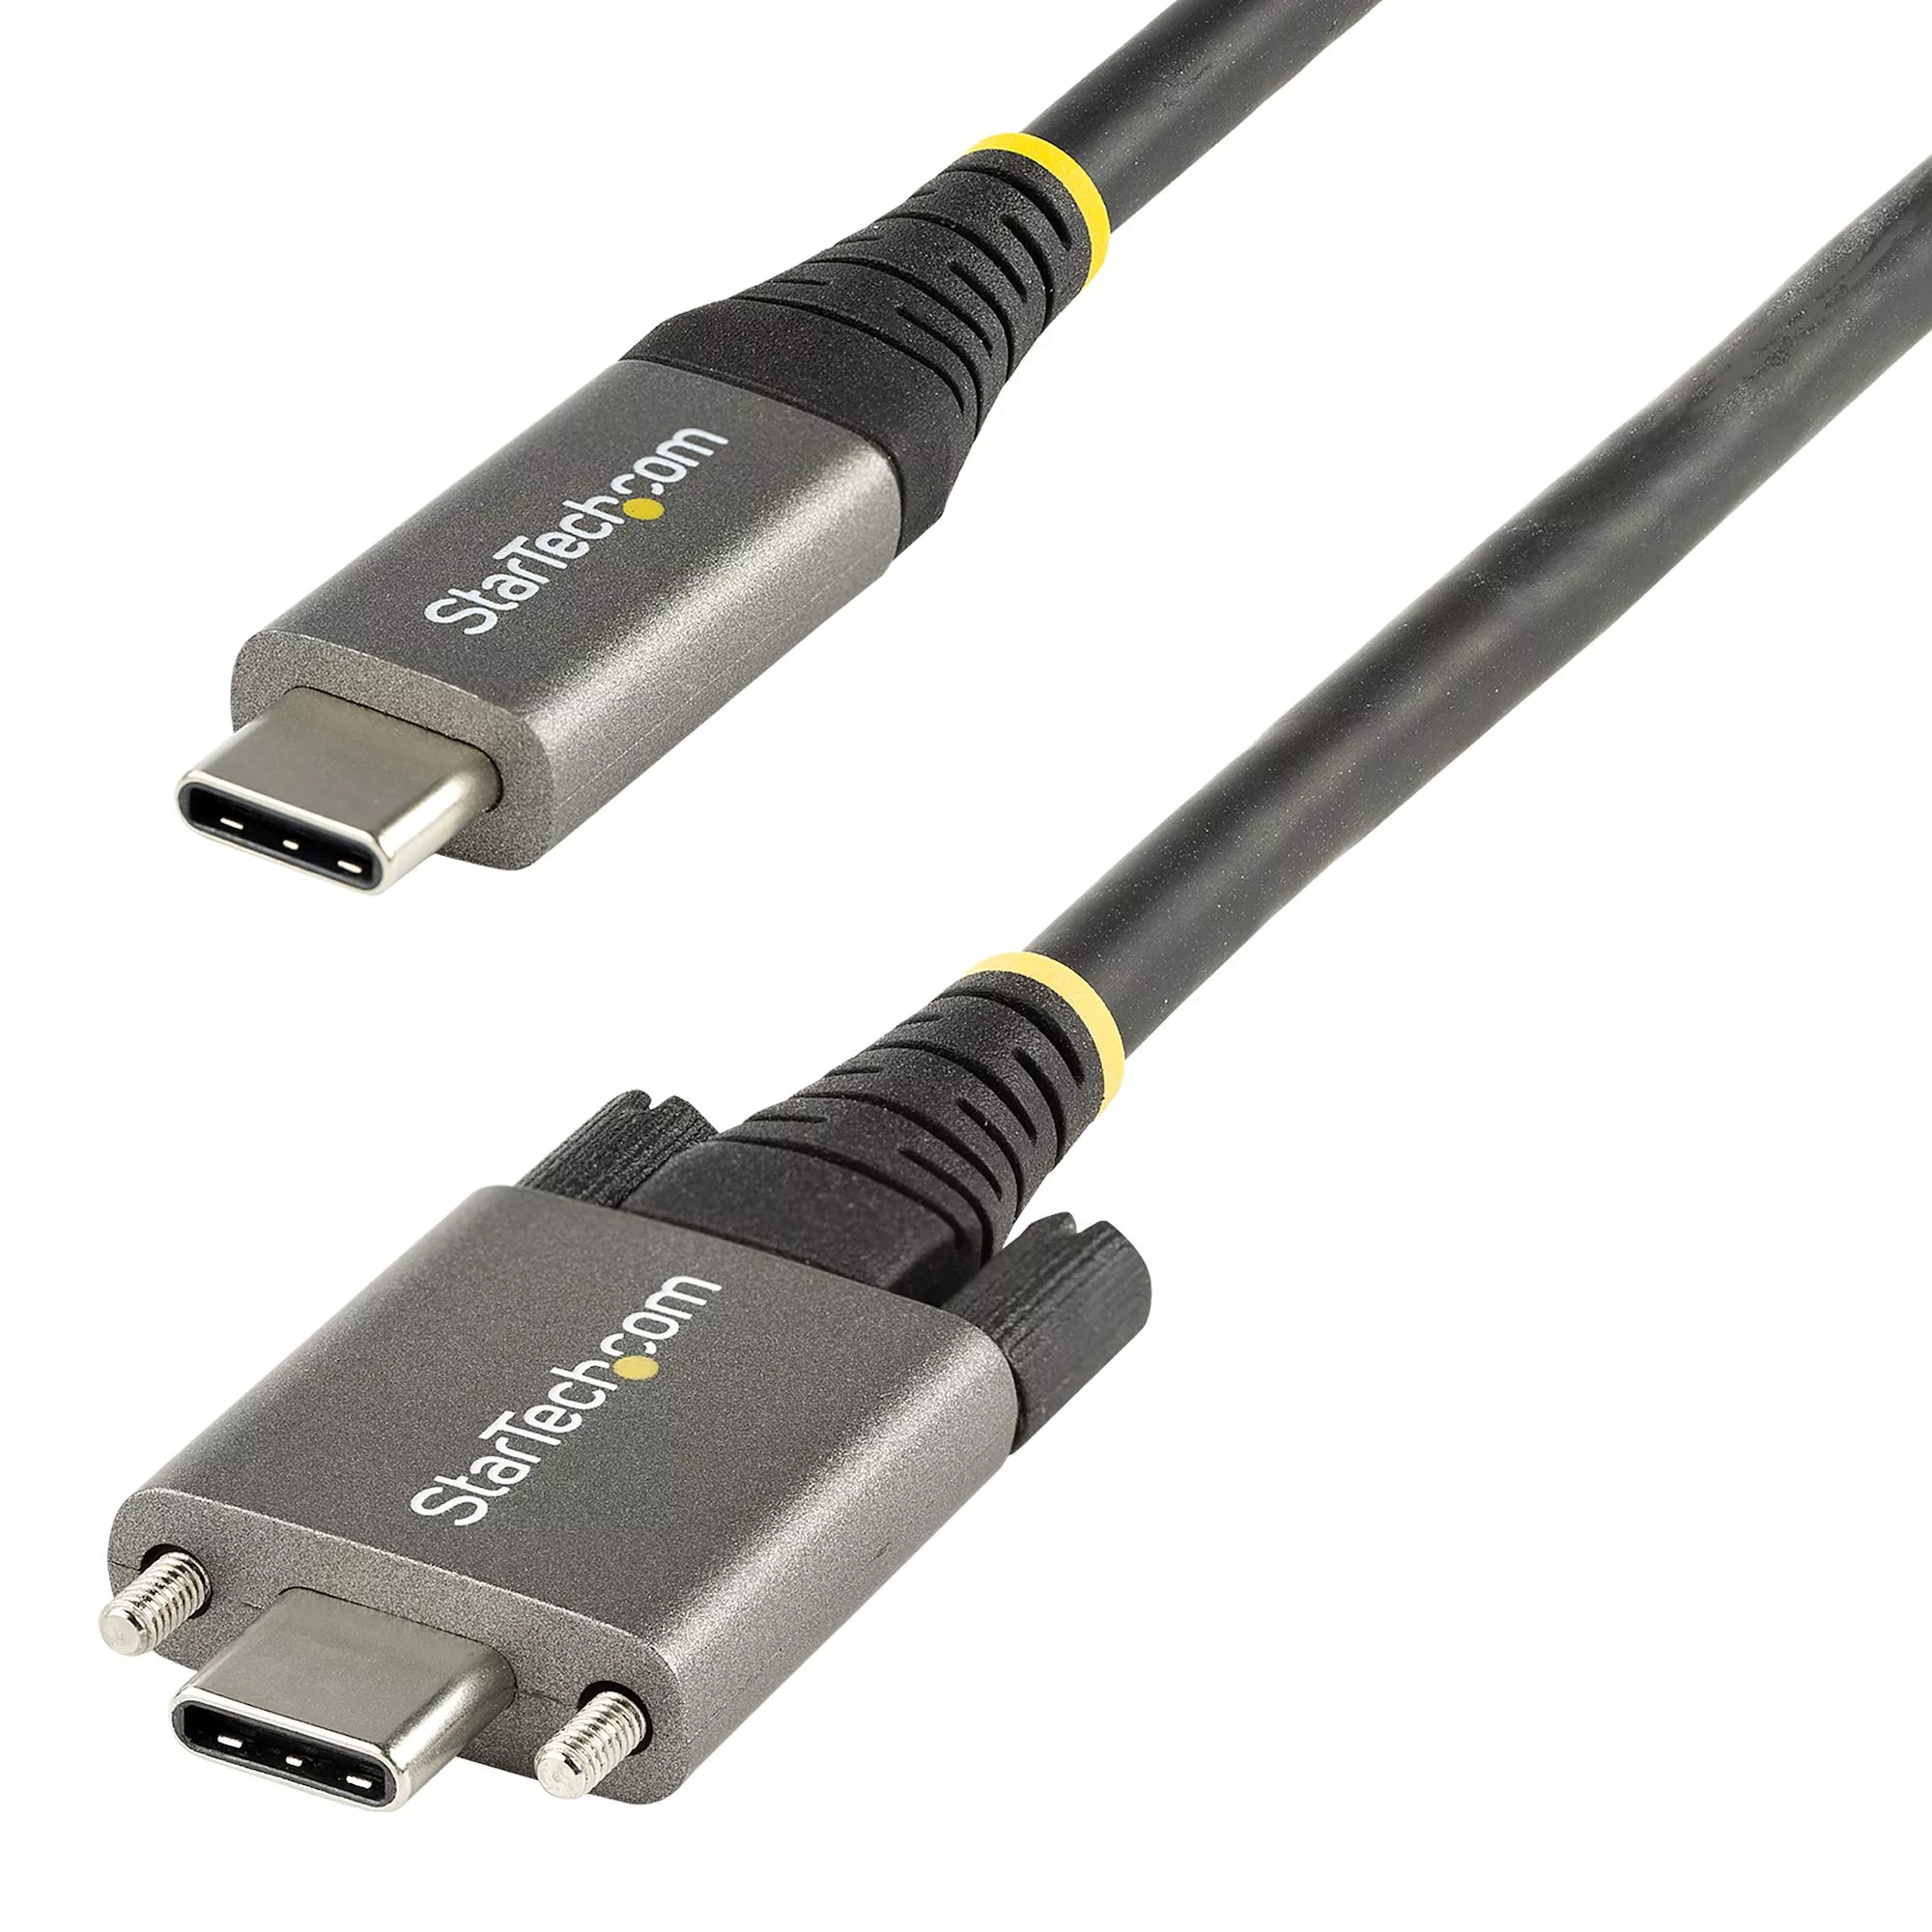 Achat StarTech.com Câble USB C 10Gbps à Verrouillage par Vis au meilleur prix